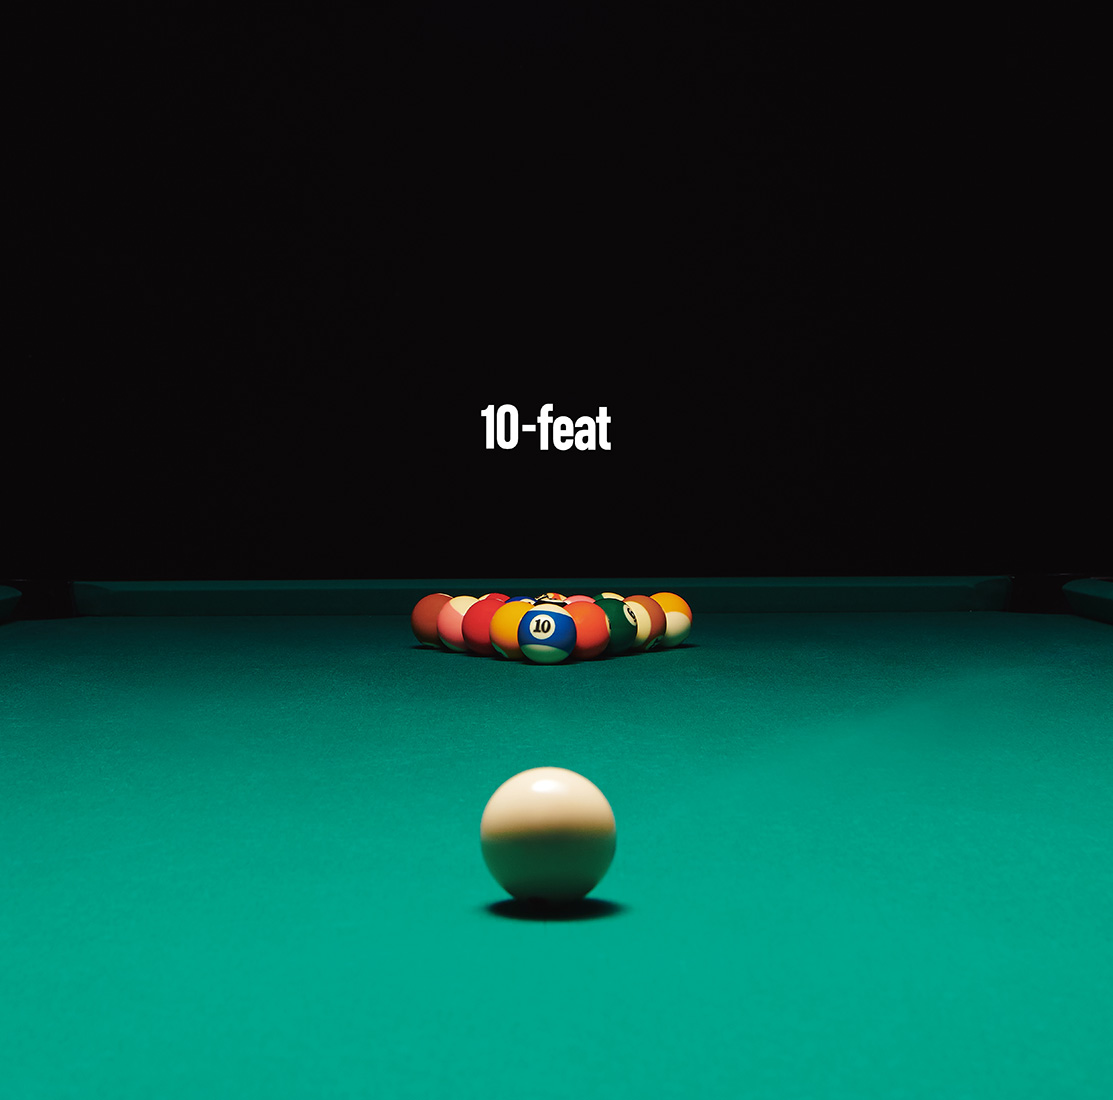 10-FEET、コラボレーションアルバム『10-feat』の全曲トレーラー公開